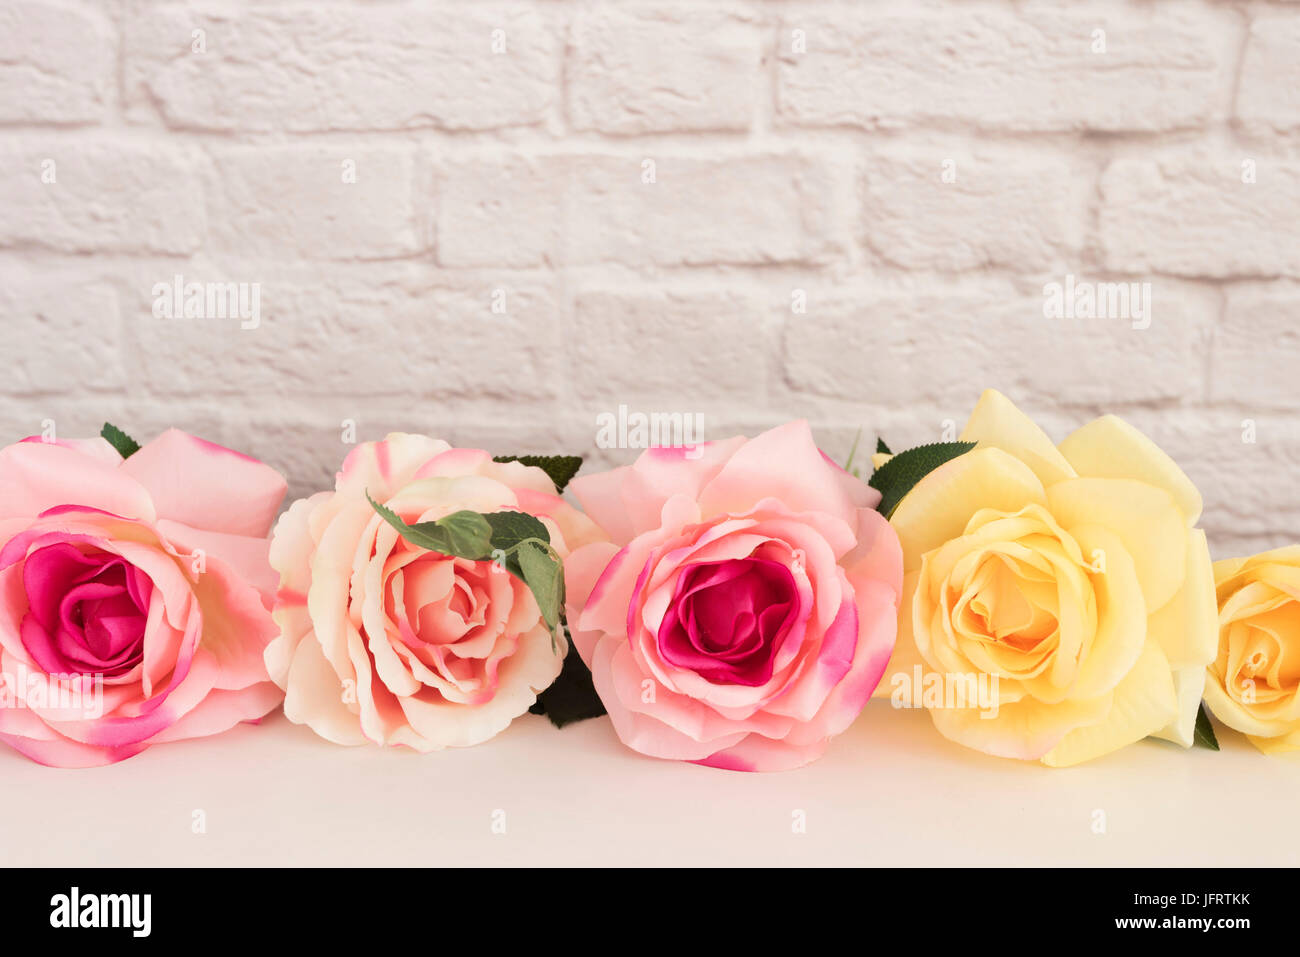 Rose Rose des maquettes. Le titre de Stock Photography. Floral Frame, mur de style maquette. Fleur Rose Valentine immersive, Fête des mères, carte-cadeau, Blanc 24 m Banque D'Images